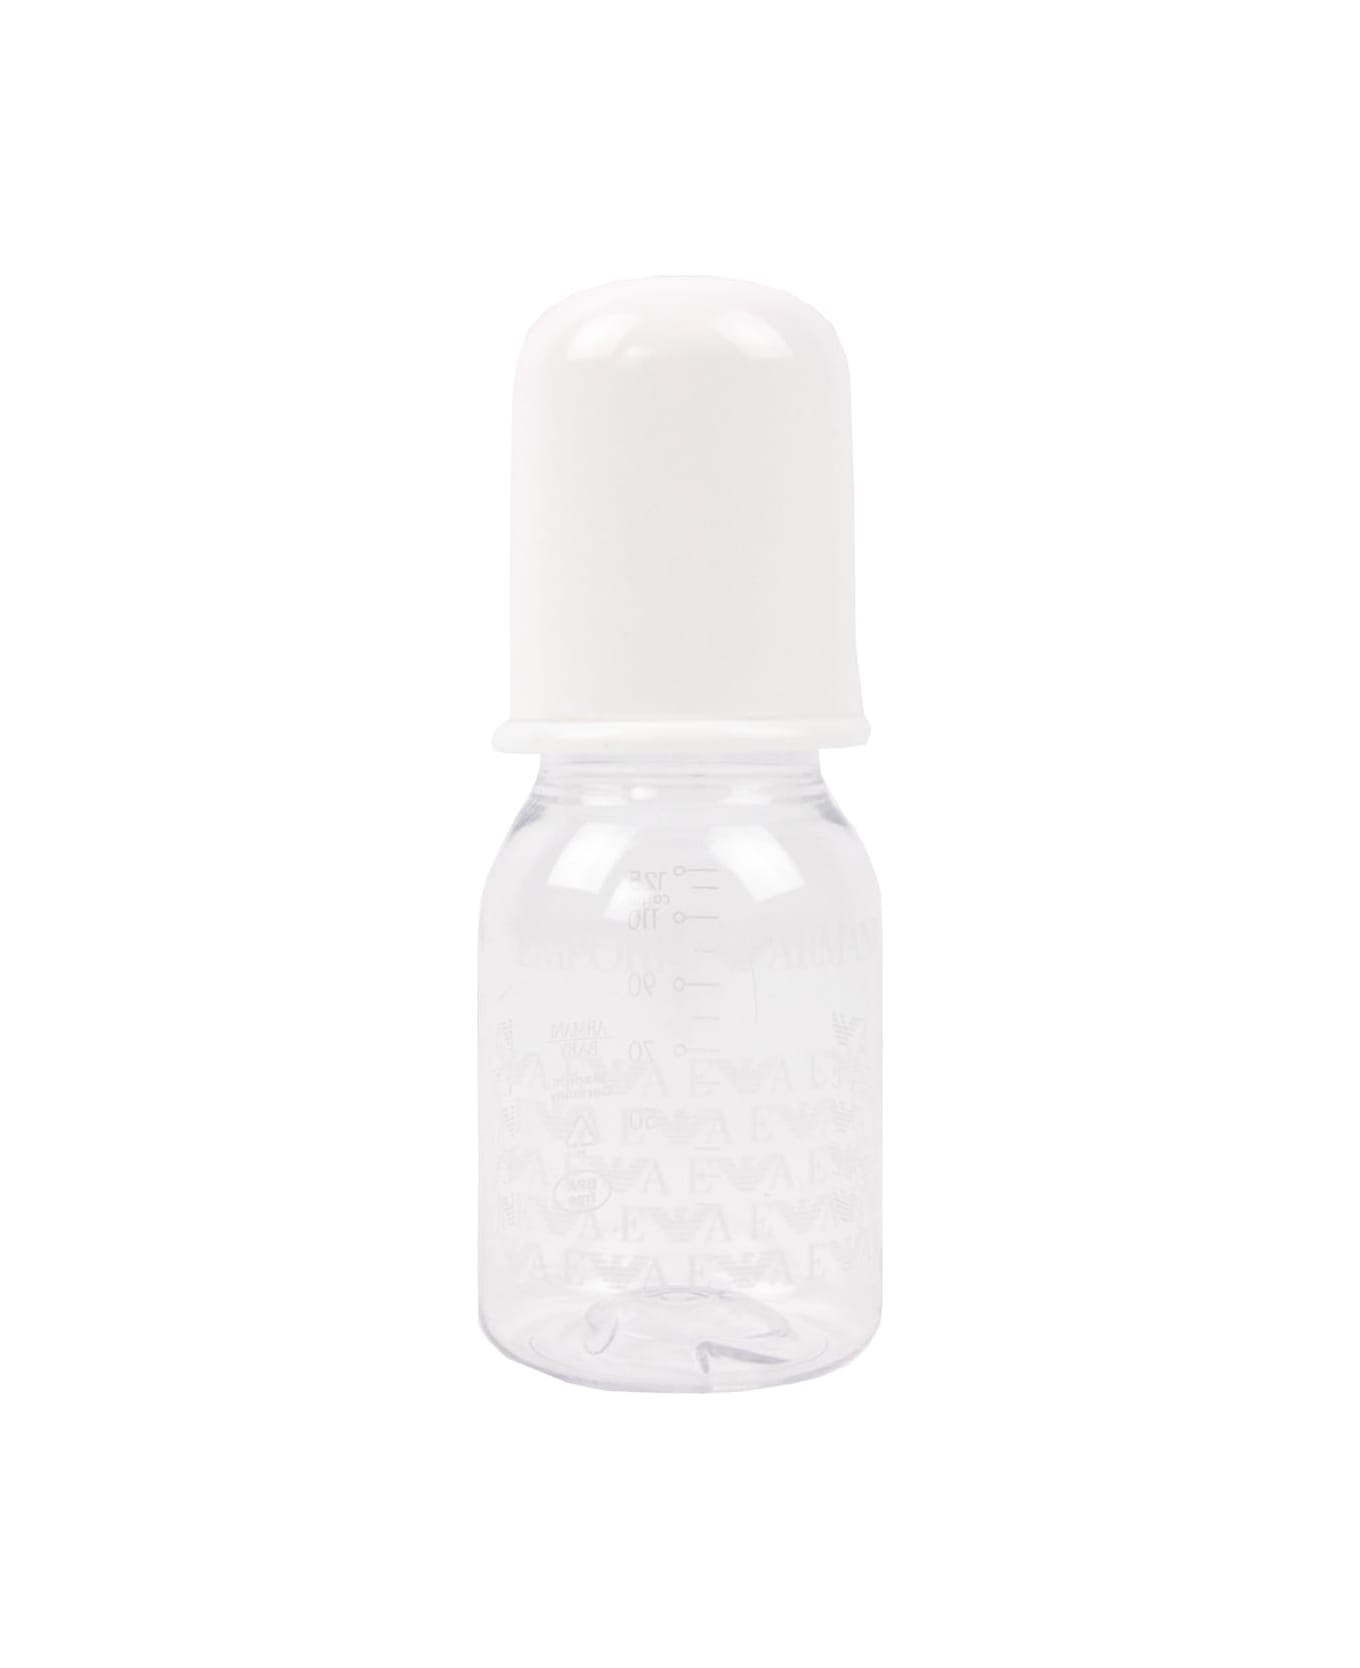 Emporio Armani Baby Bottle With Logo - White